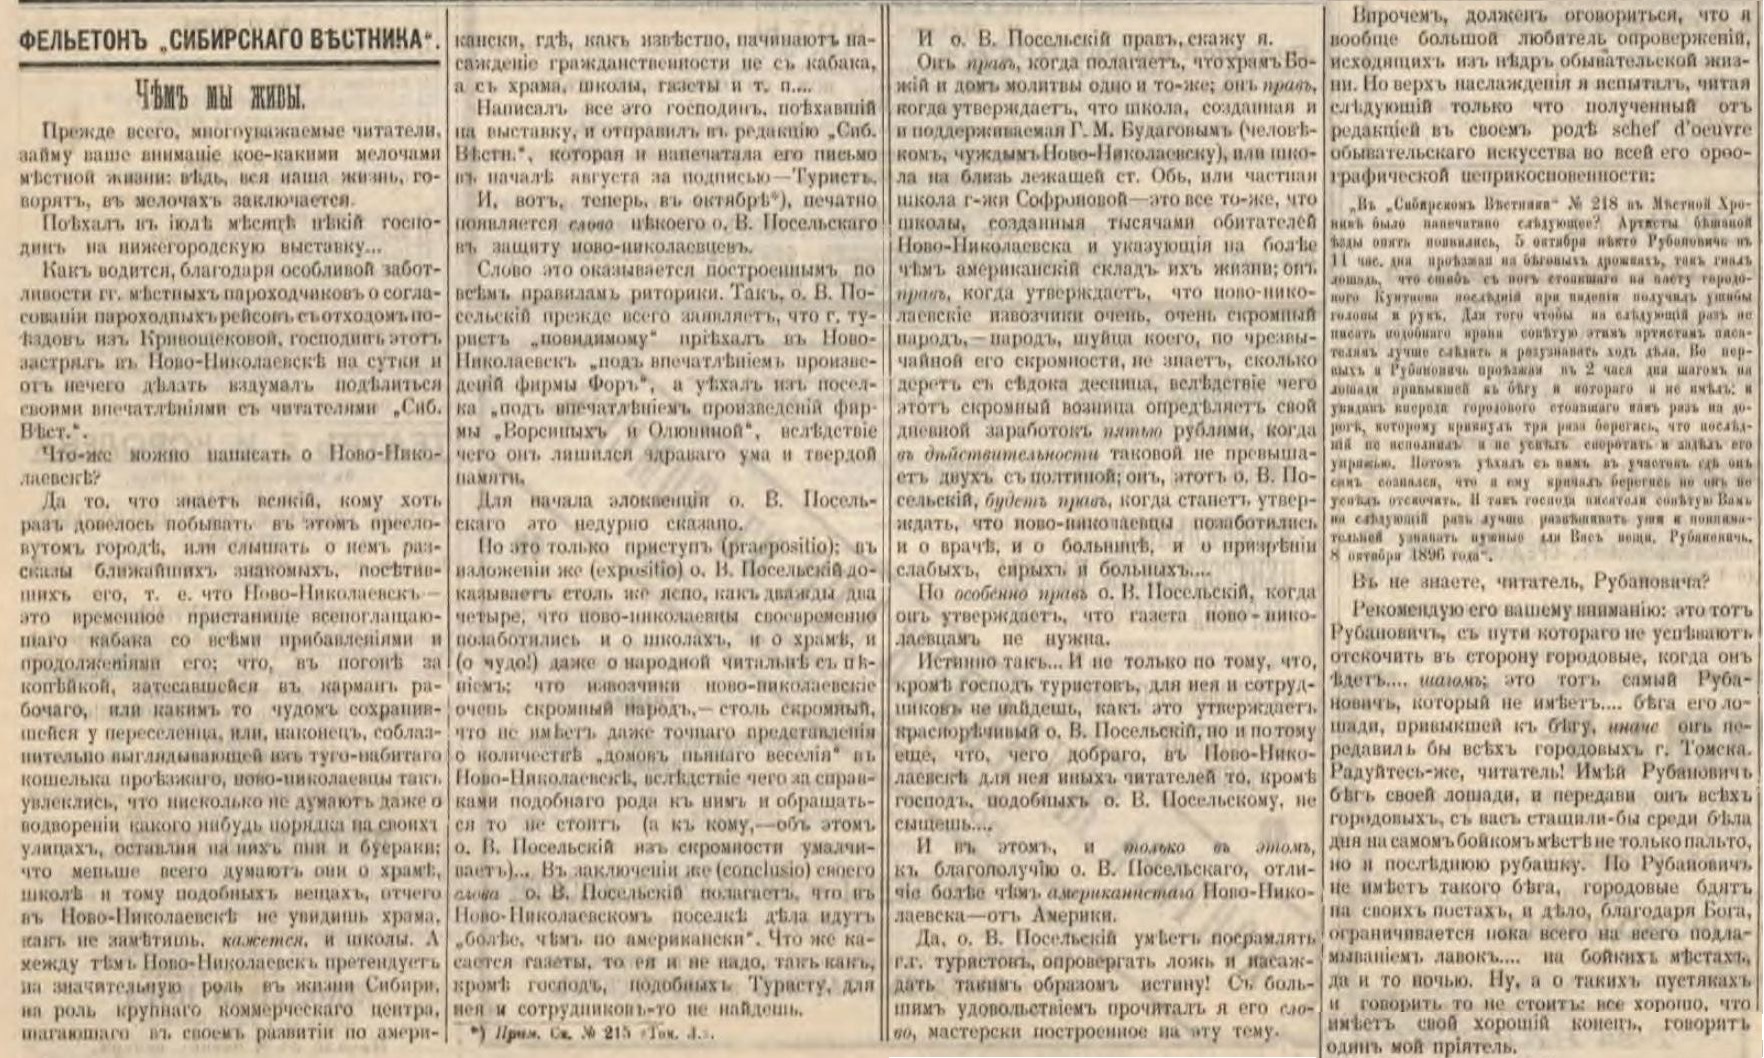 Сибирский вестник №223 18 октября 1896